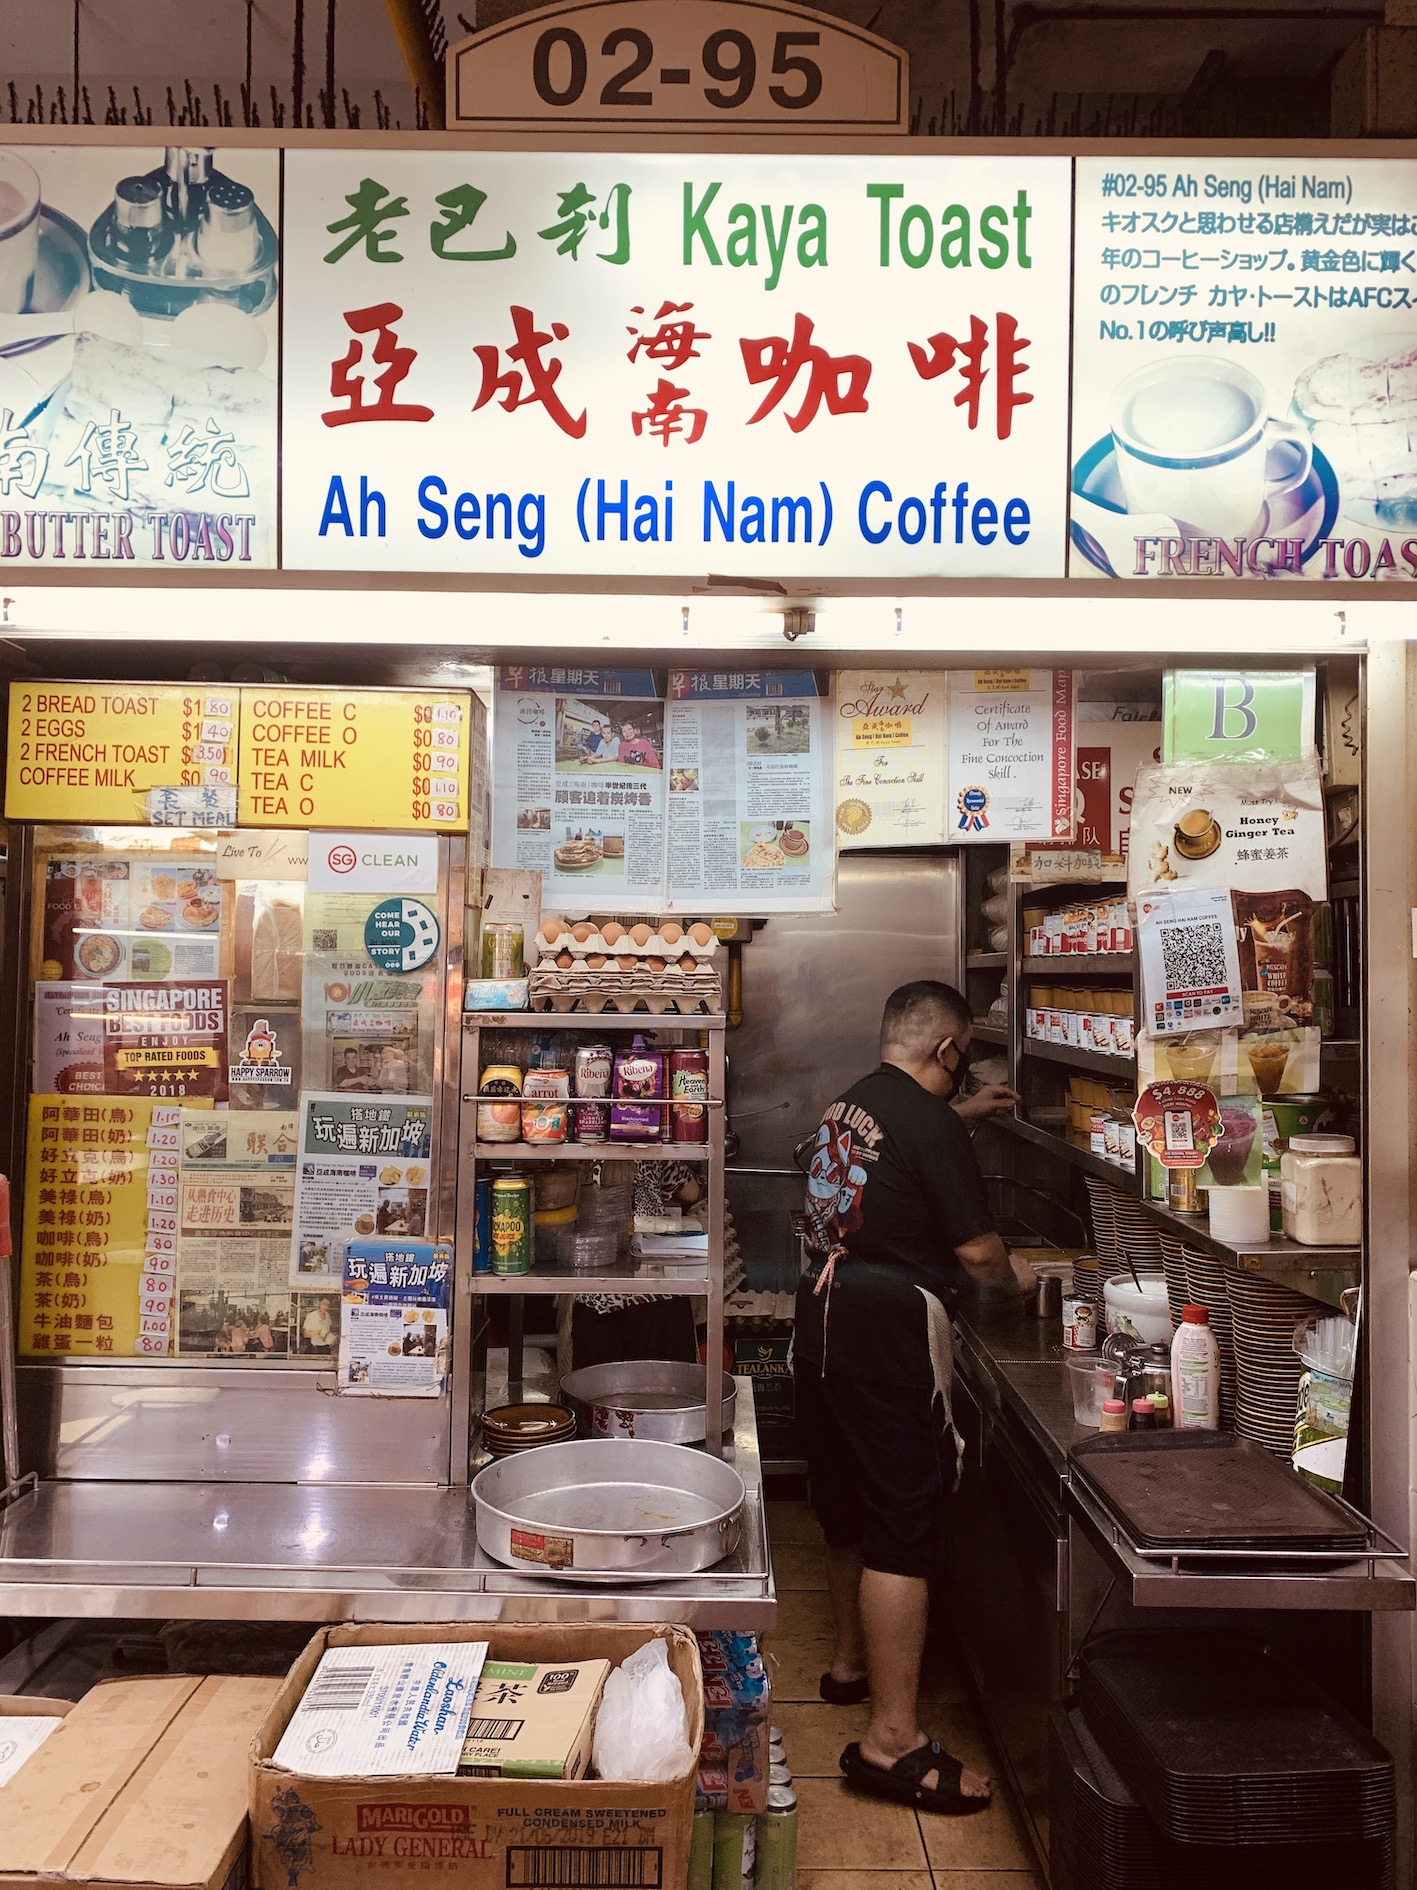 Ah Seng (Hai Nam) Coffee - Stall Front